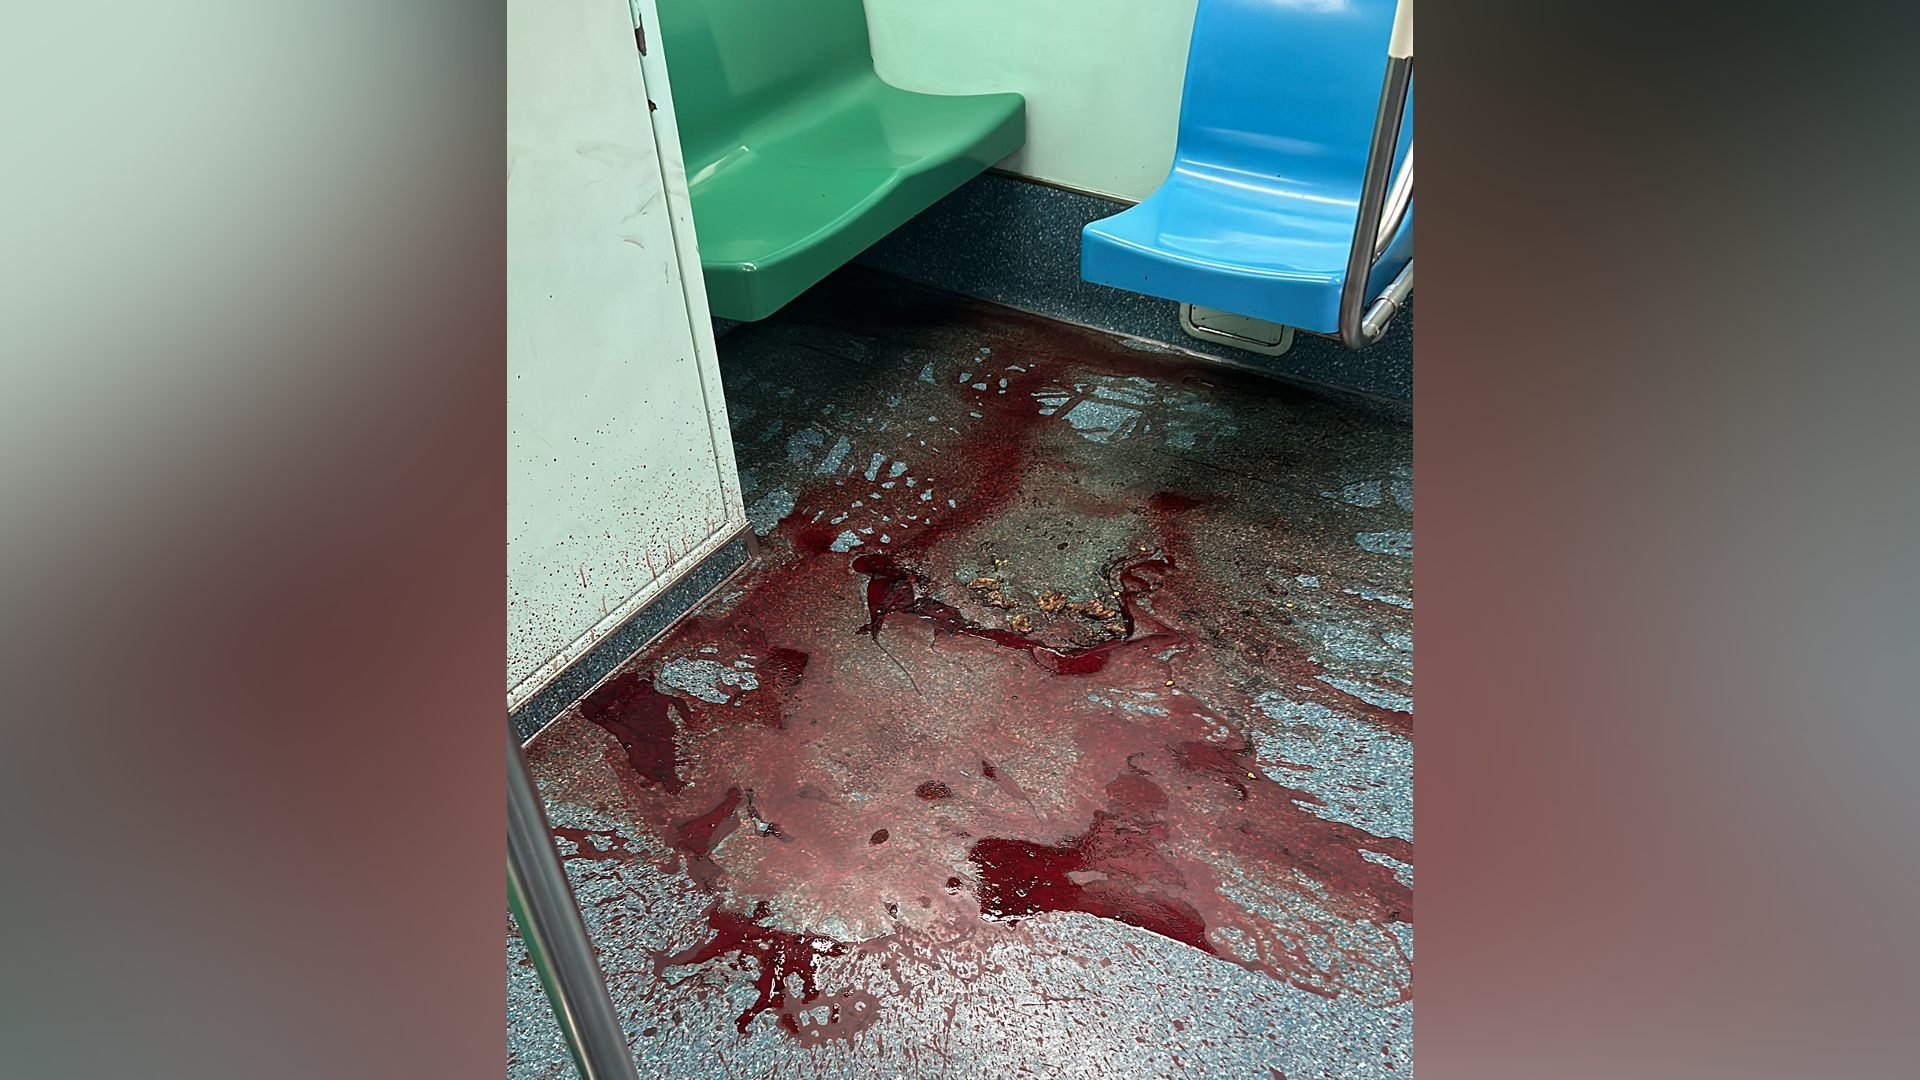 Mancha vermelha encontrada em vagão do metrô de SP não é sangue, diz empresa